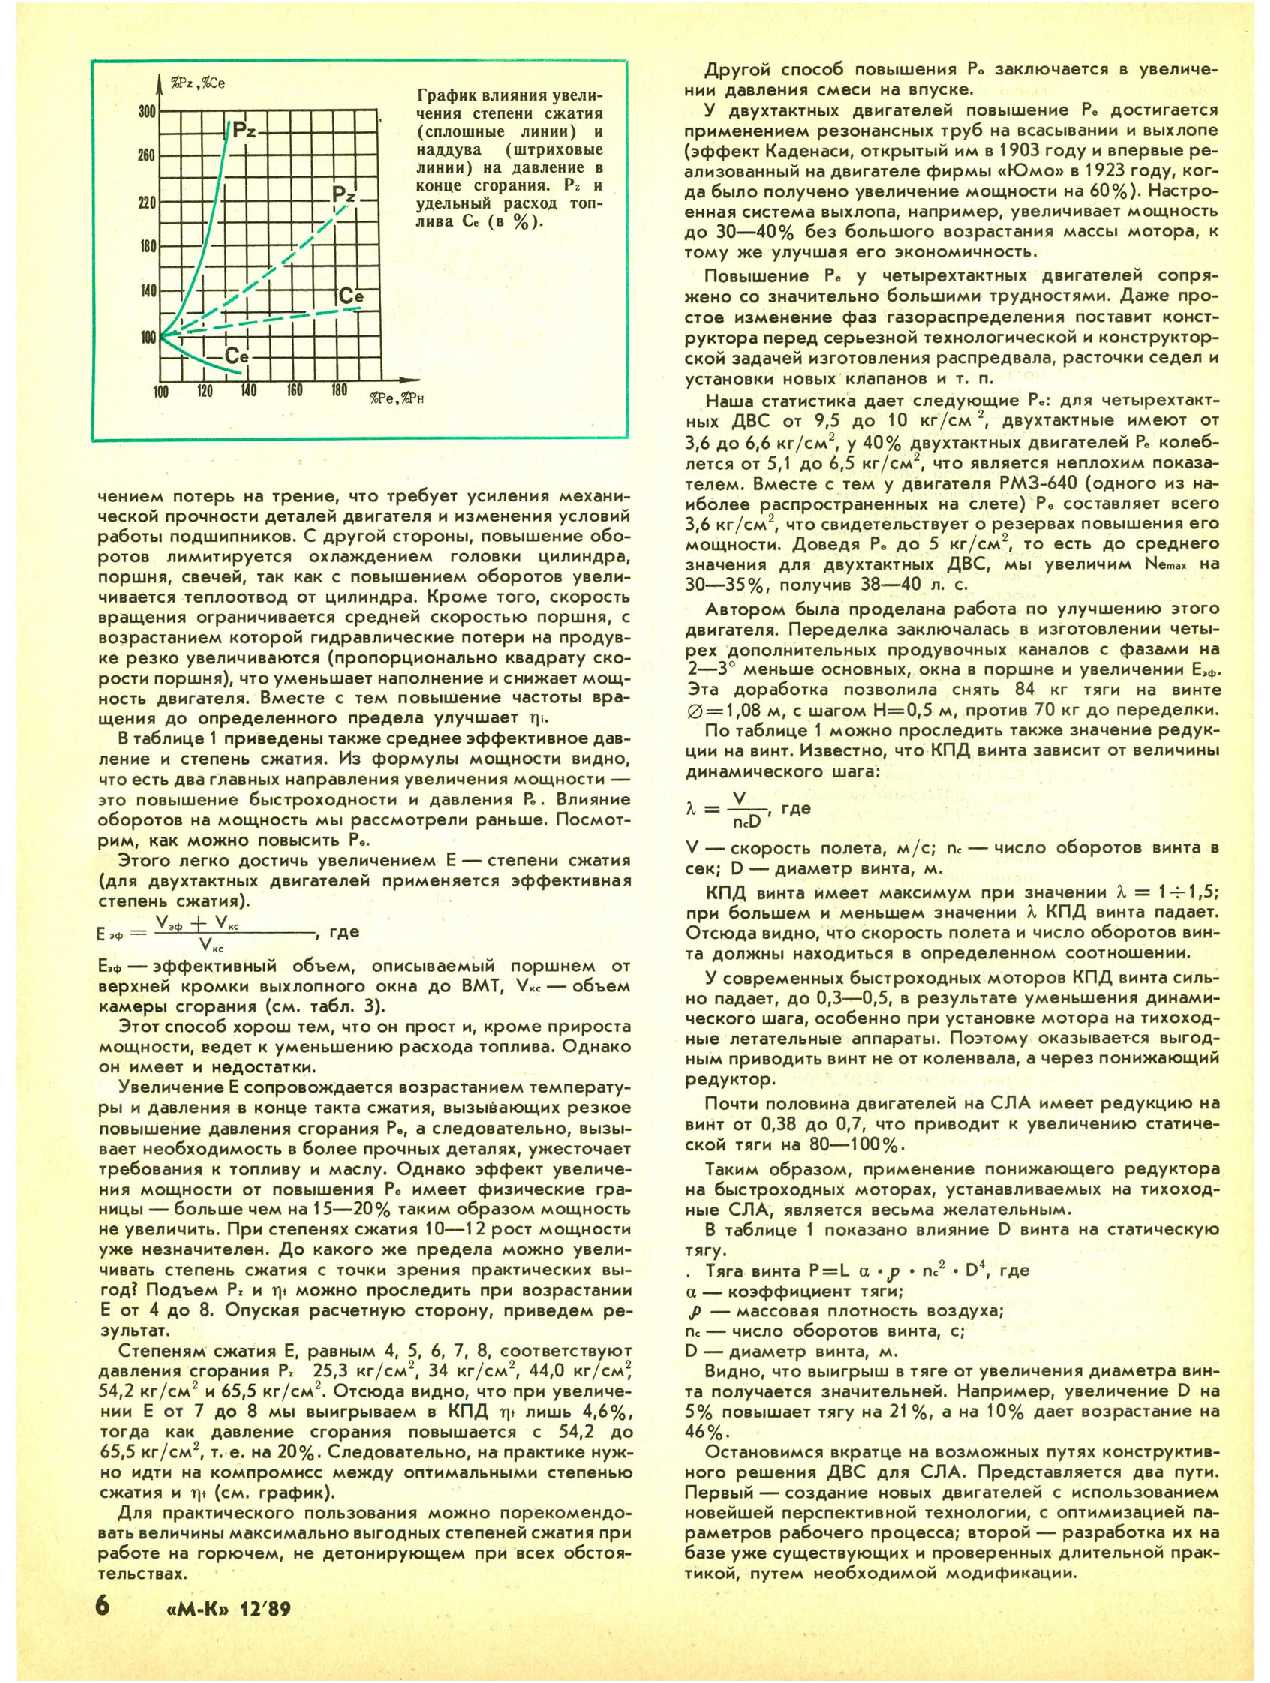 МК 12, 1989, 6 c.